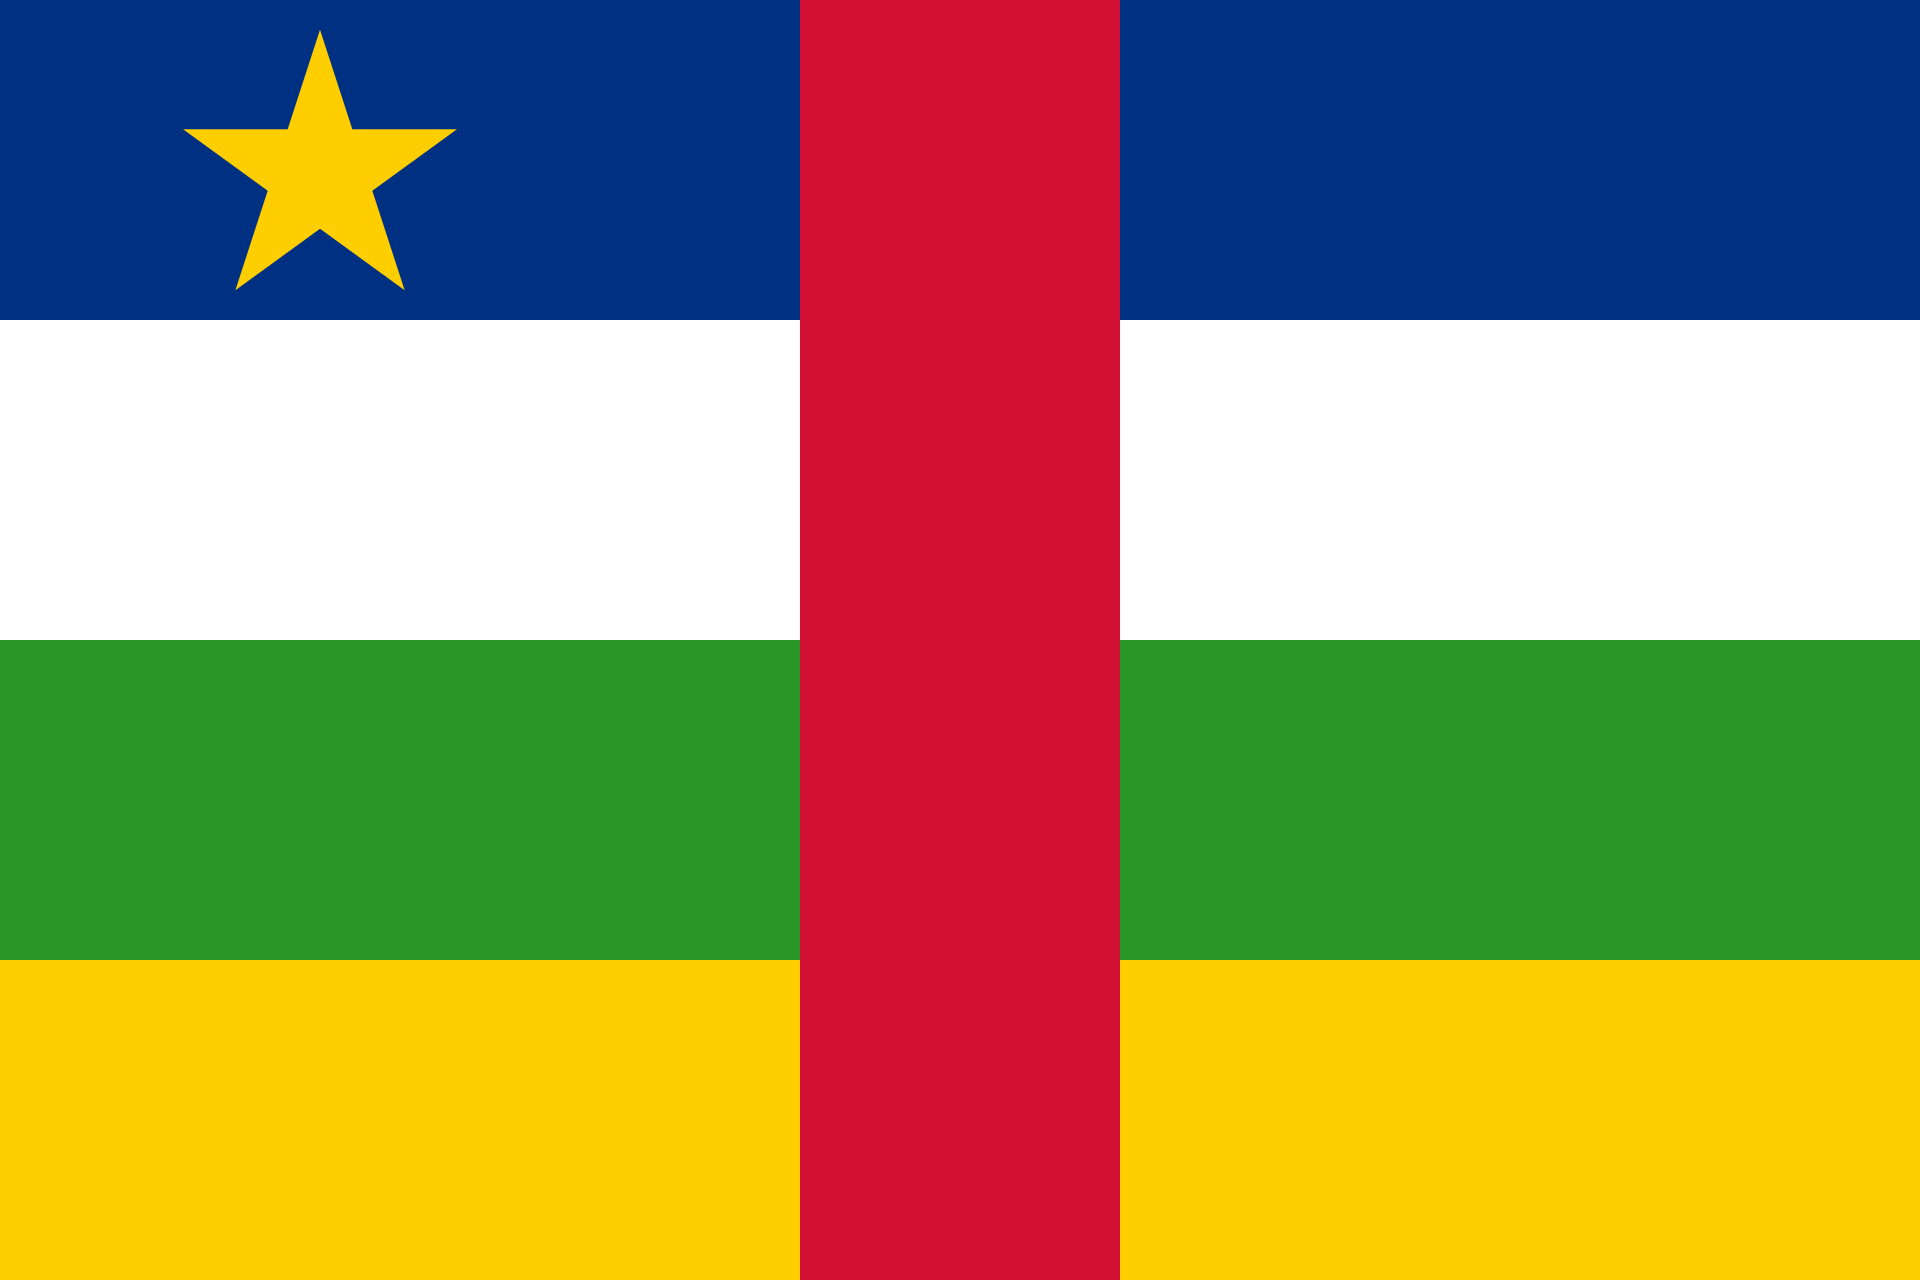 علم جمهورية أفريقيا الوسطى